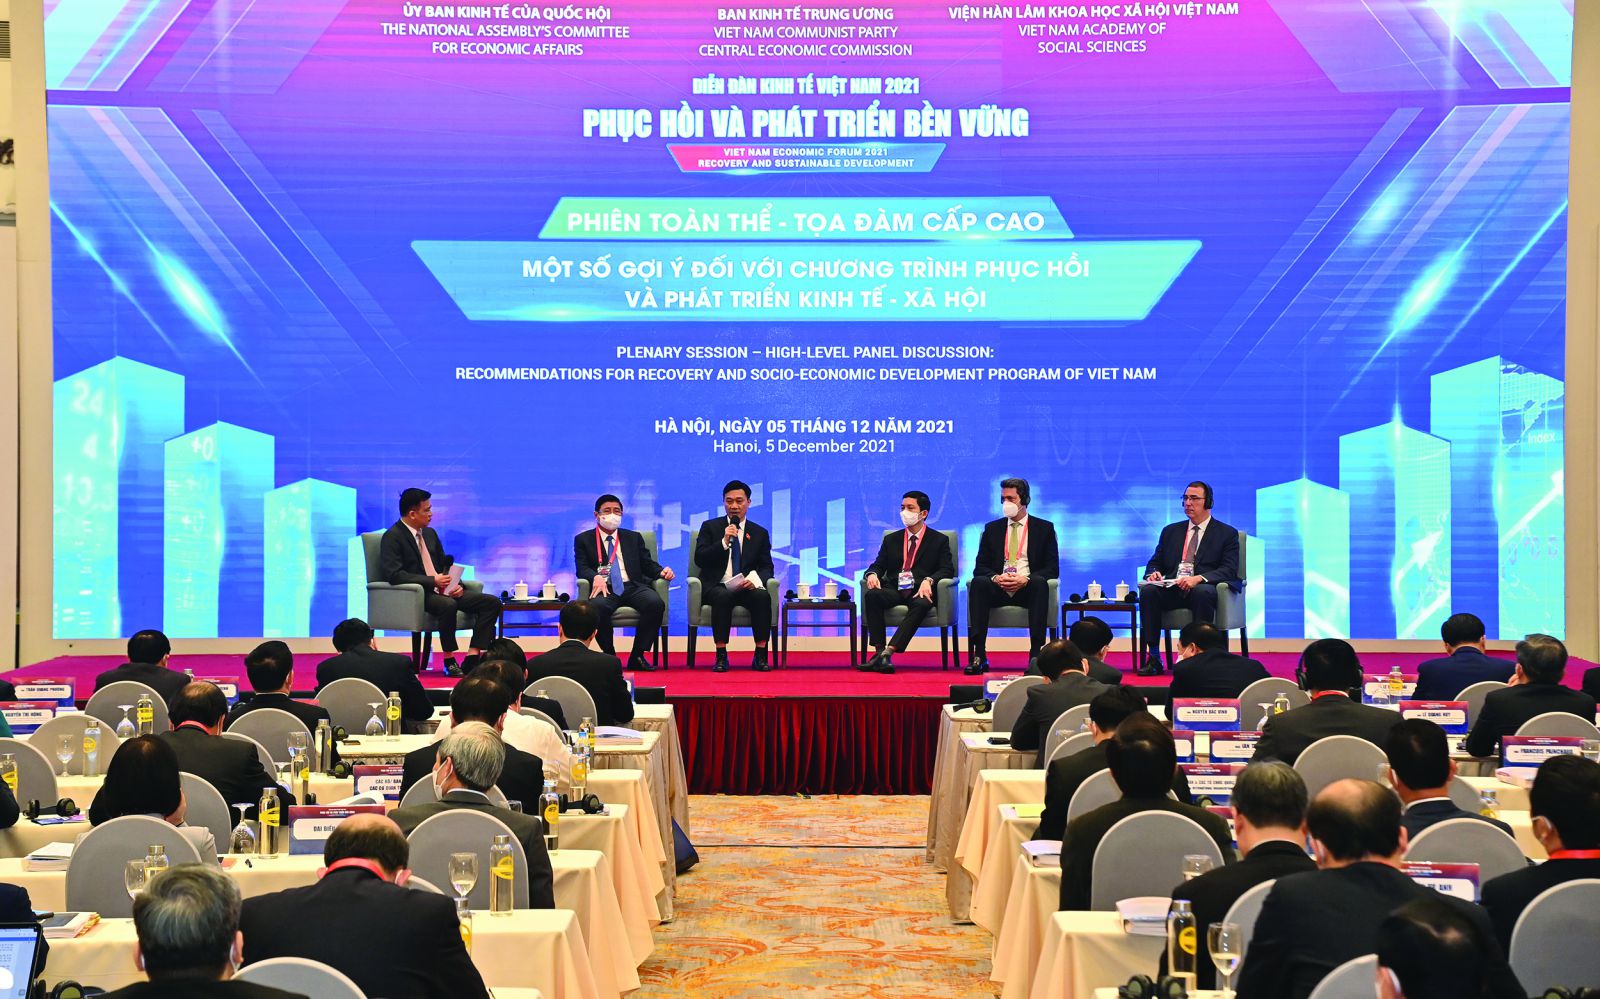  Các chuyên gia đóng góp ý kiến tại Diễn đàn kinh tế Việt Nam.